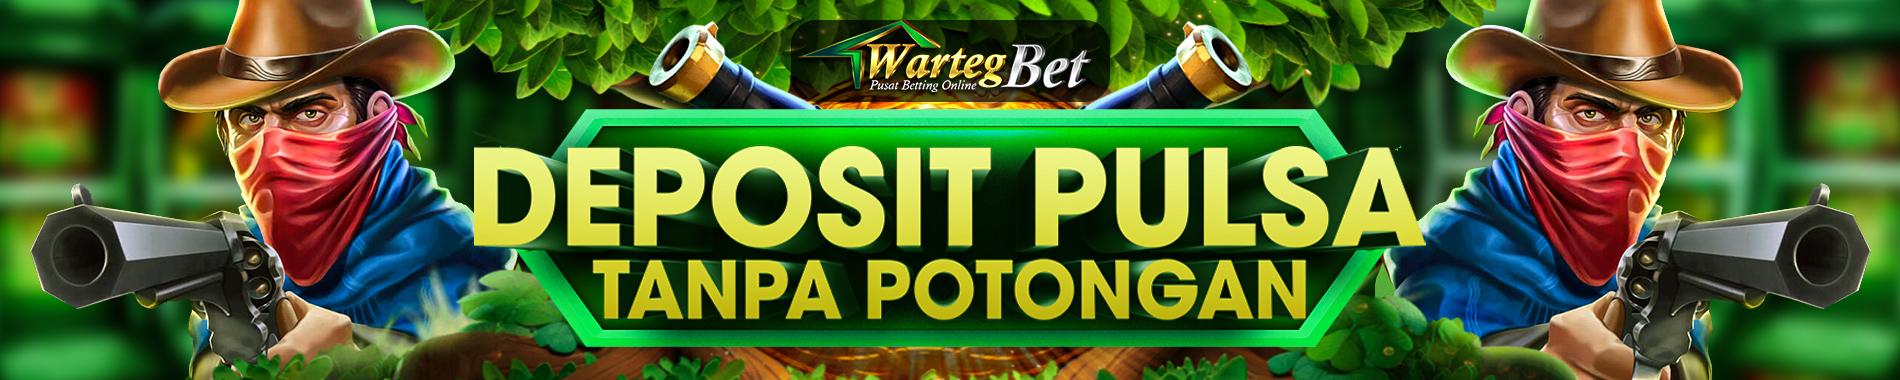 Deposit Pulsa Tanpa Potongan | Wartegbet.com Slot Online | RTP Tertinggi 2021